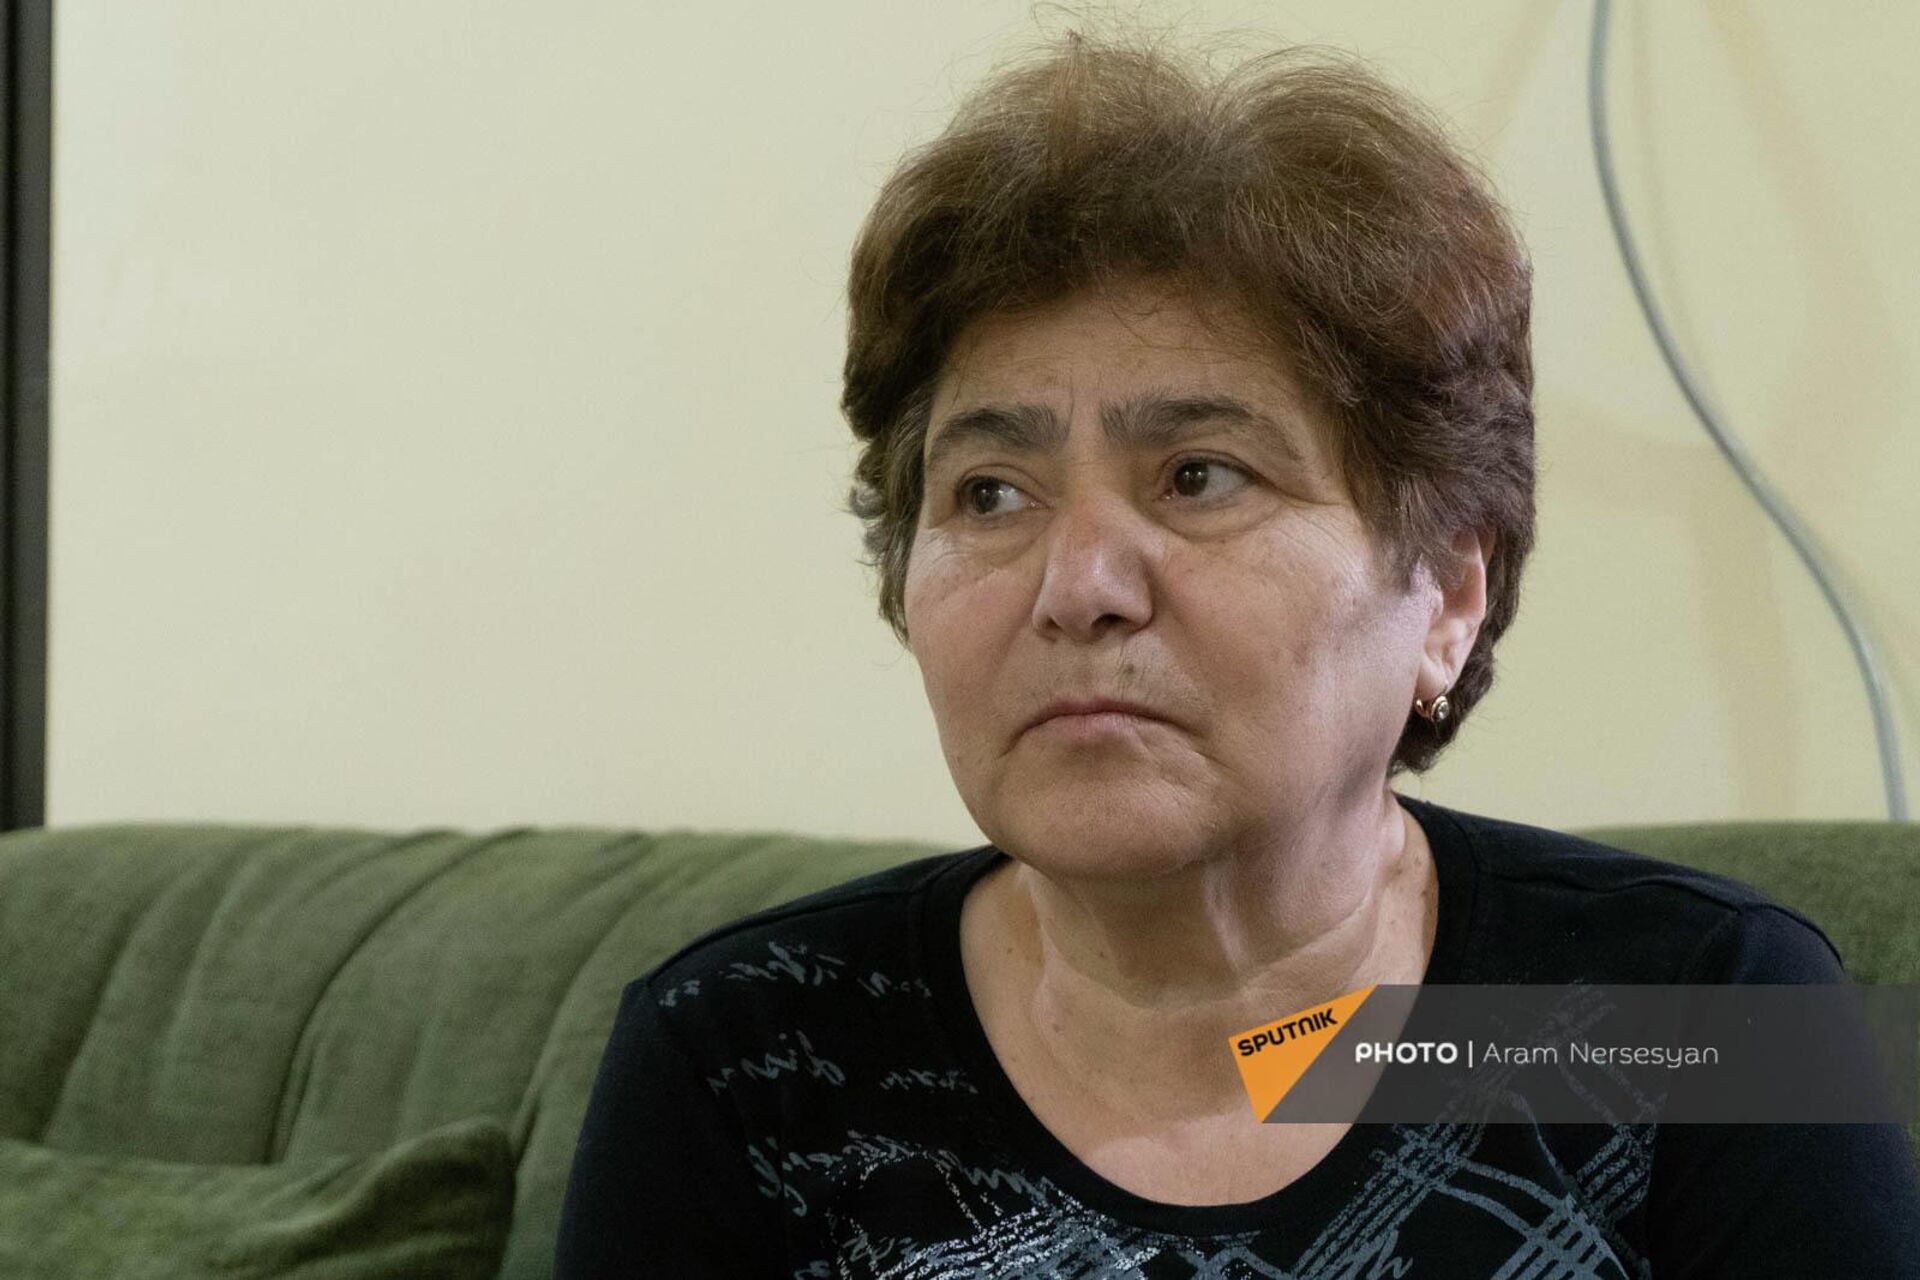 Արցախյան պատերազմում զոհված զինծառայող Գարիկ Դավթյանի մայրը՝ Գոհարը - Sputnik Արմենիա, 1920, 07.04.2022